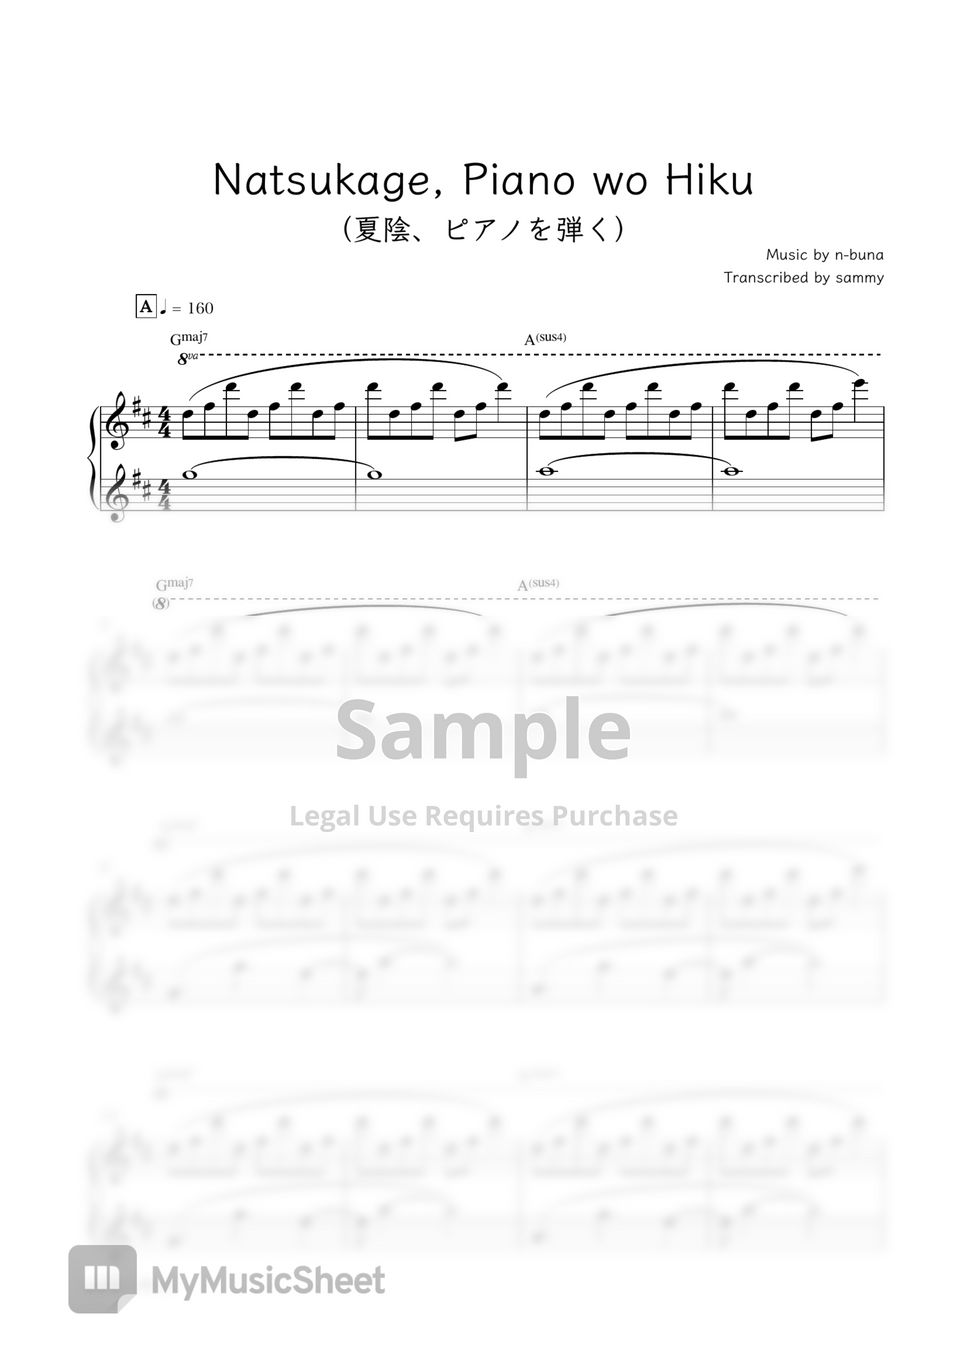 Yorushika（ヨルシカ） - Natsukage, Piano wo Hiku (夏陰、ピアノを弾く) by sammy